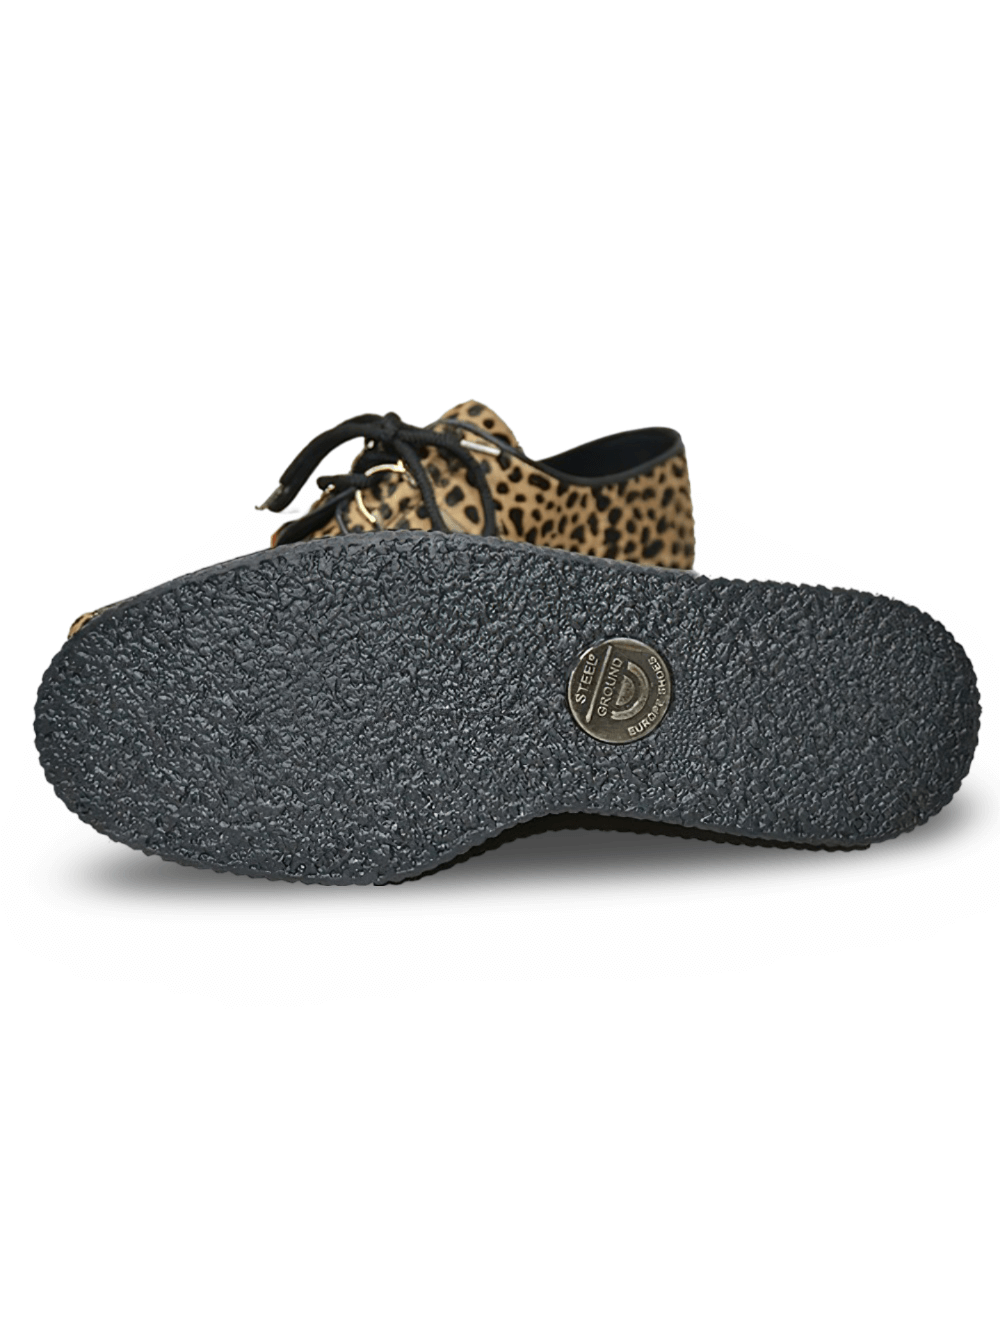 Creepers unisexes élégantes à imprimé léopard avec lacets